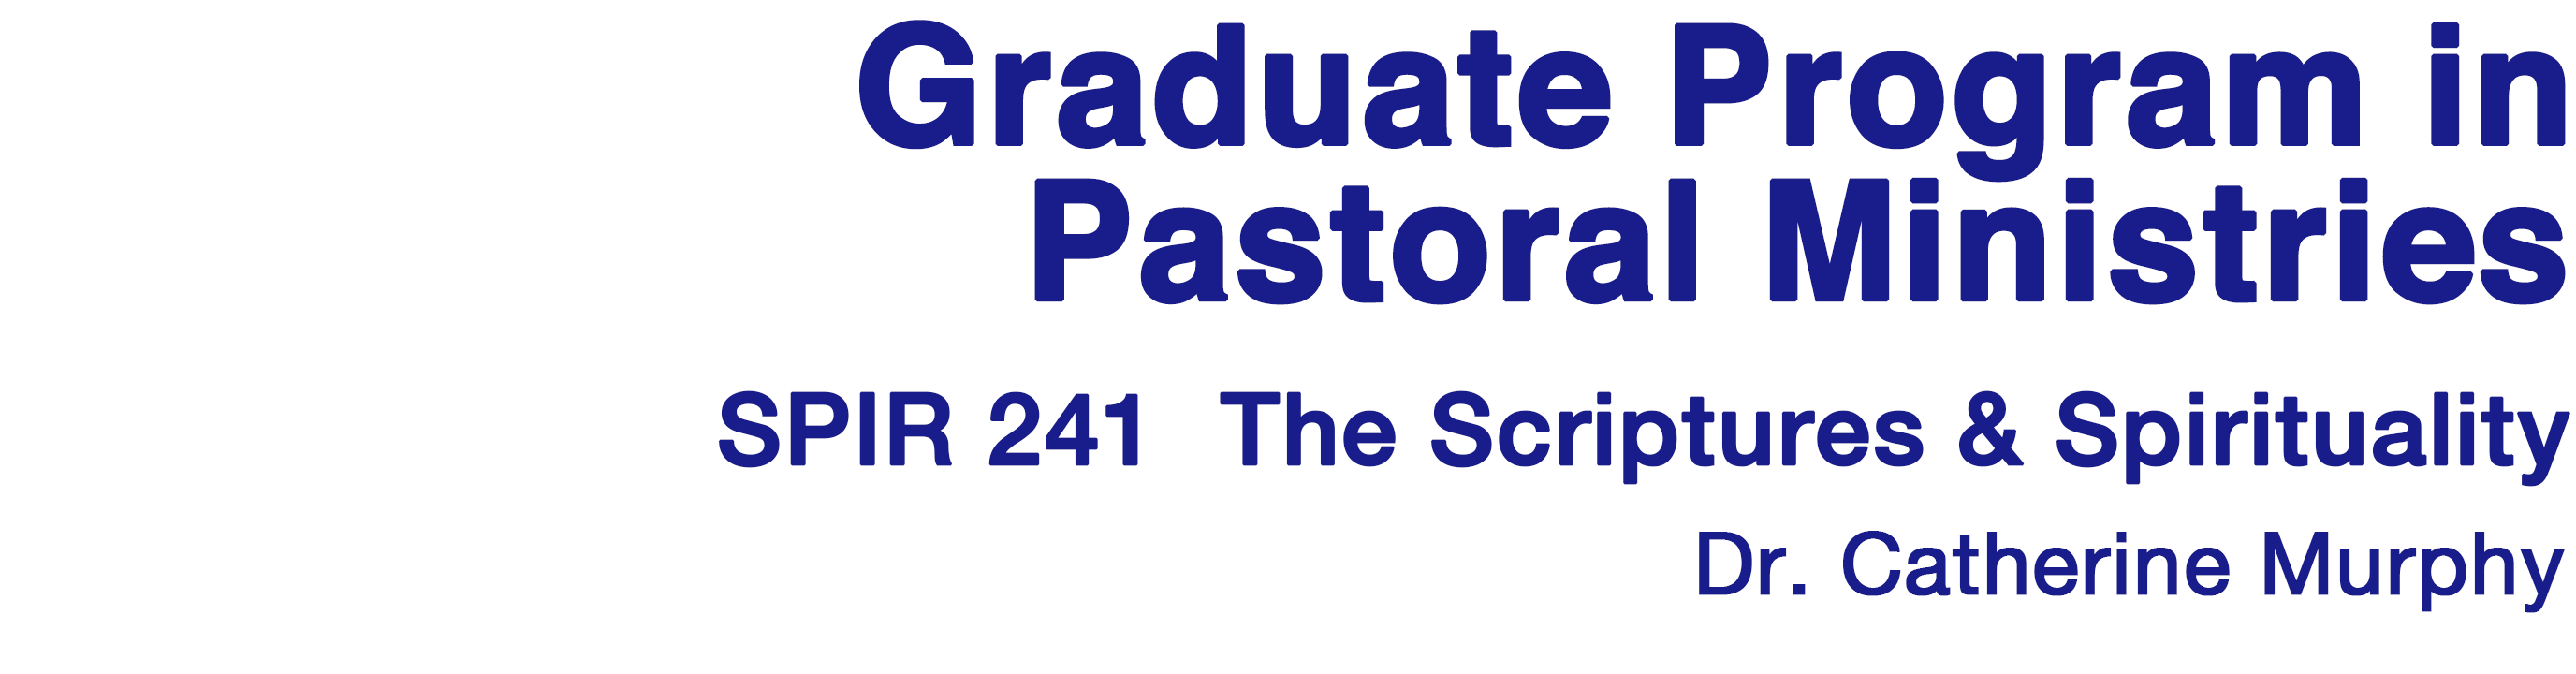 Graduate Program in Pastoral Ministries, SCU